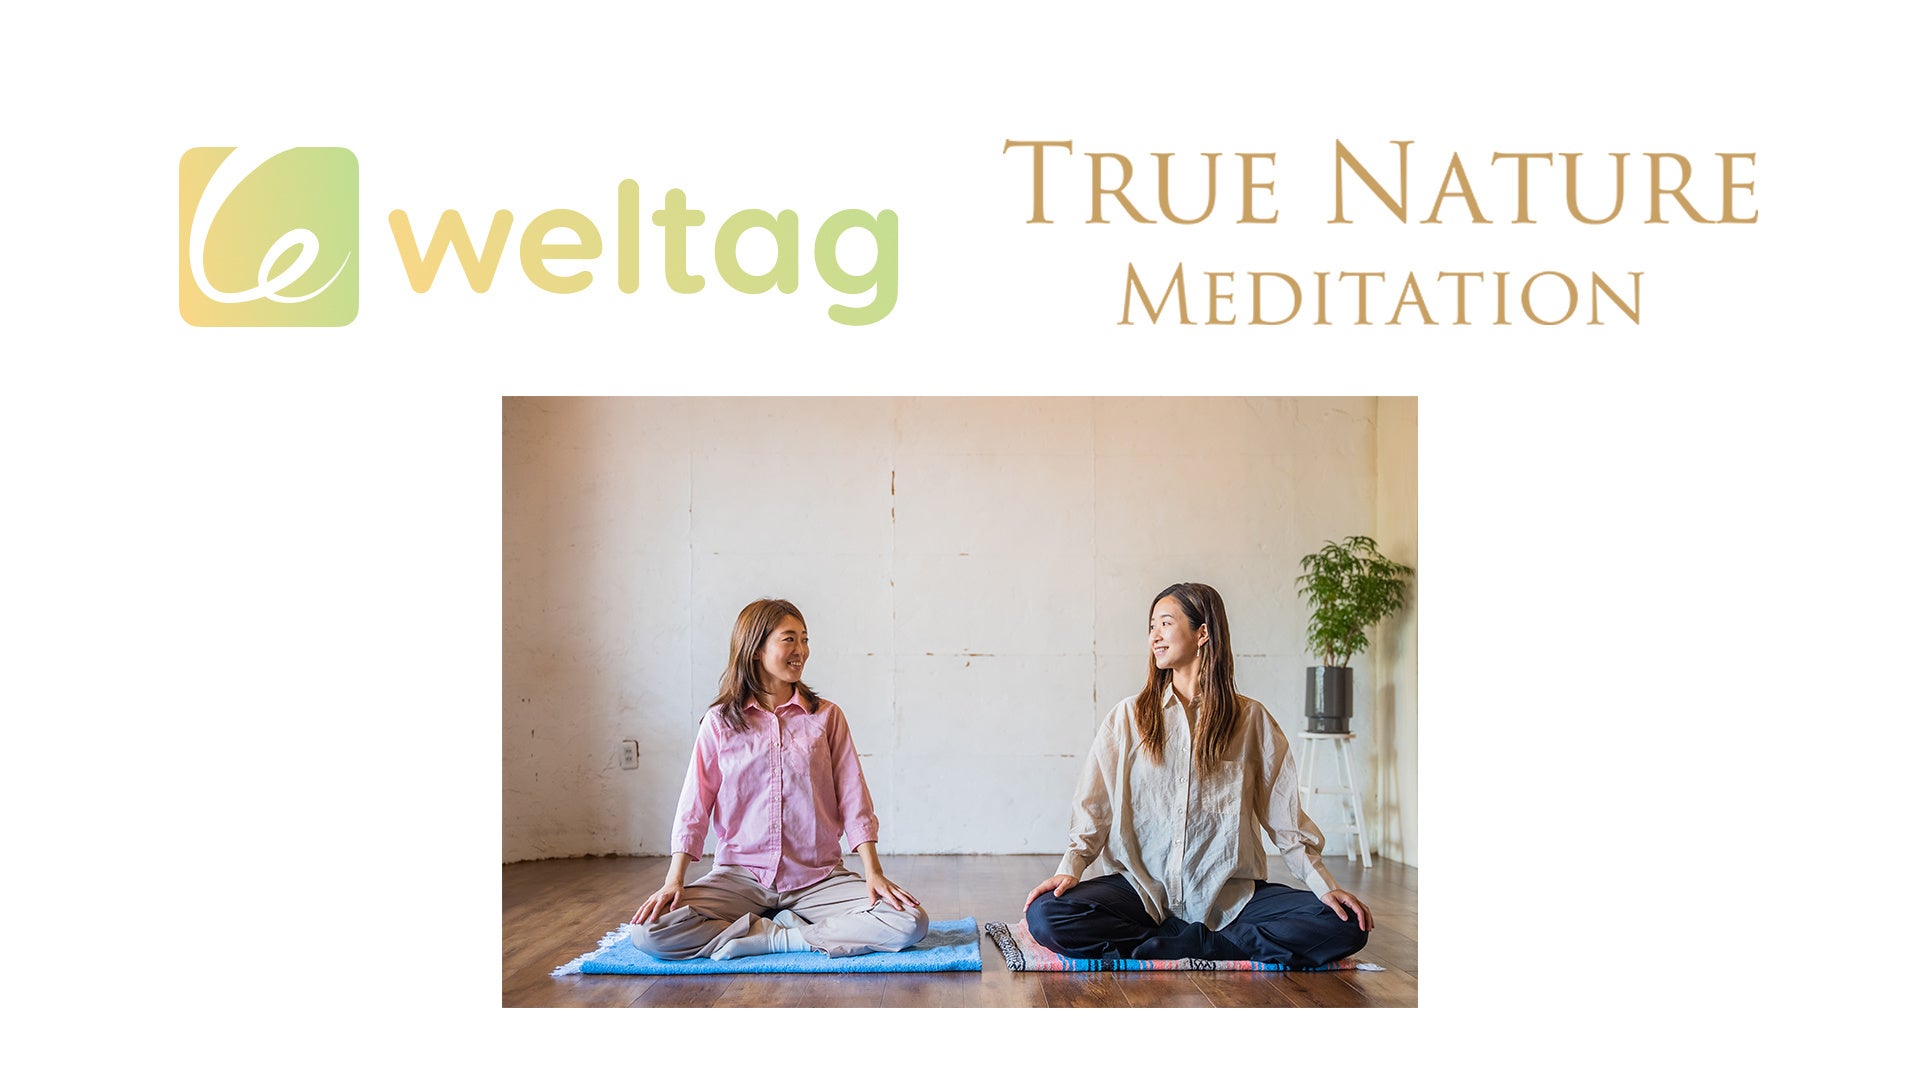 オンライントレーニングアプリ『weltag』に、瞑想のプロ『True Nature Meditation』の認定指導者が参加